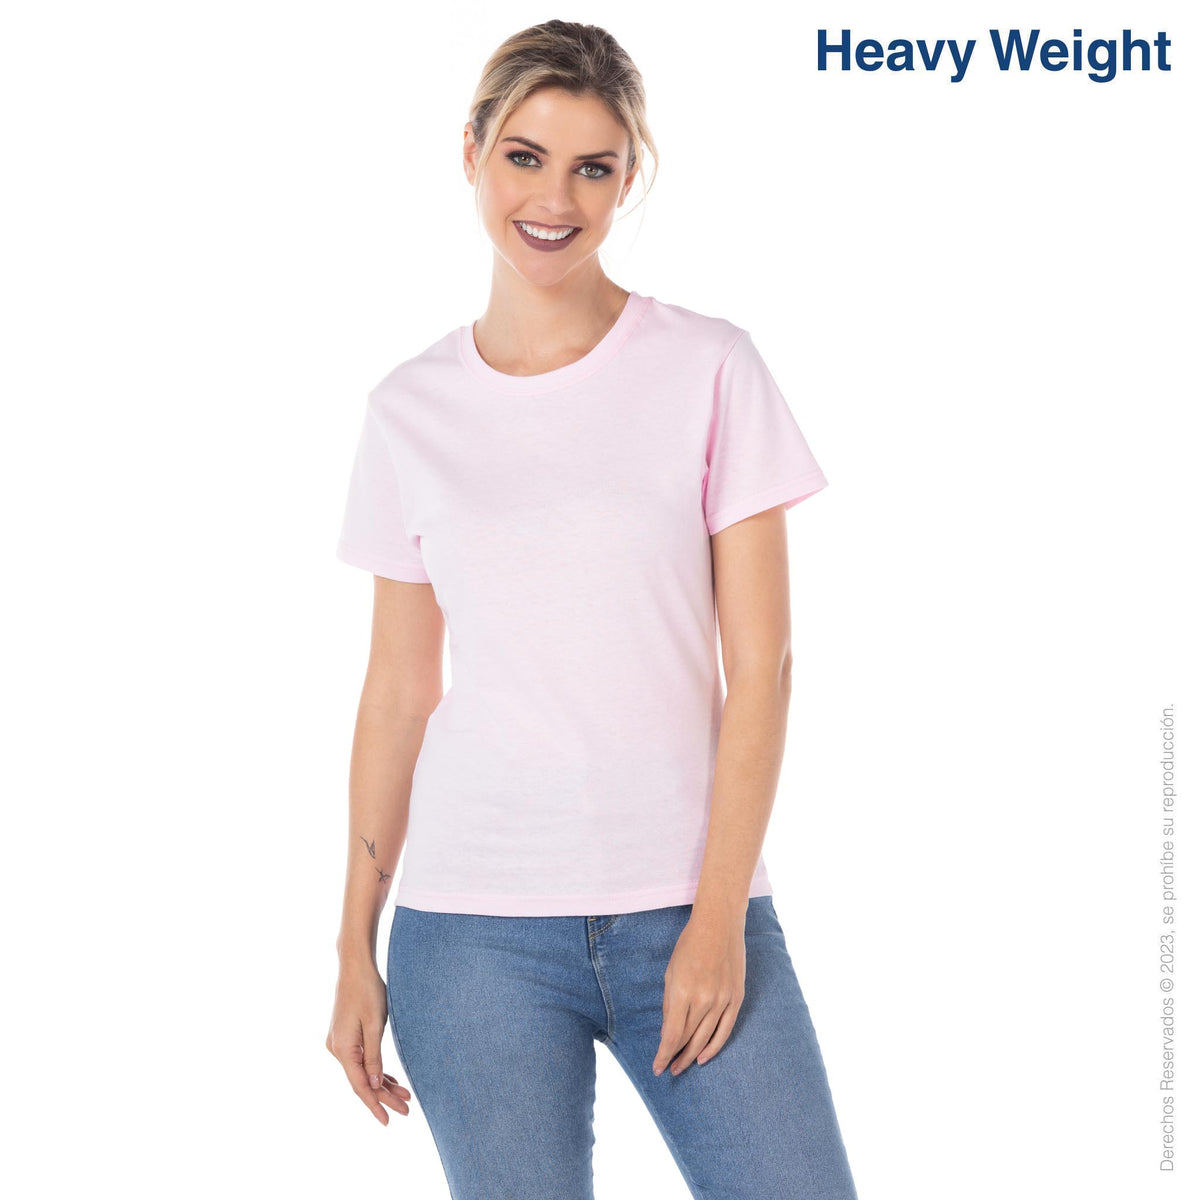 Women’s Heavy Weight Crew Neck Short Sleeve Silhouette T-Shirt (Light Pink)